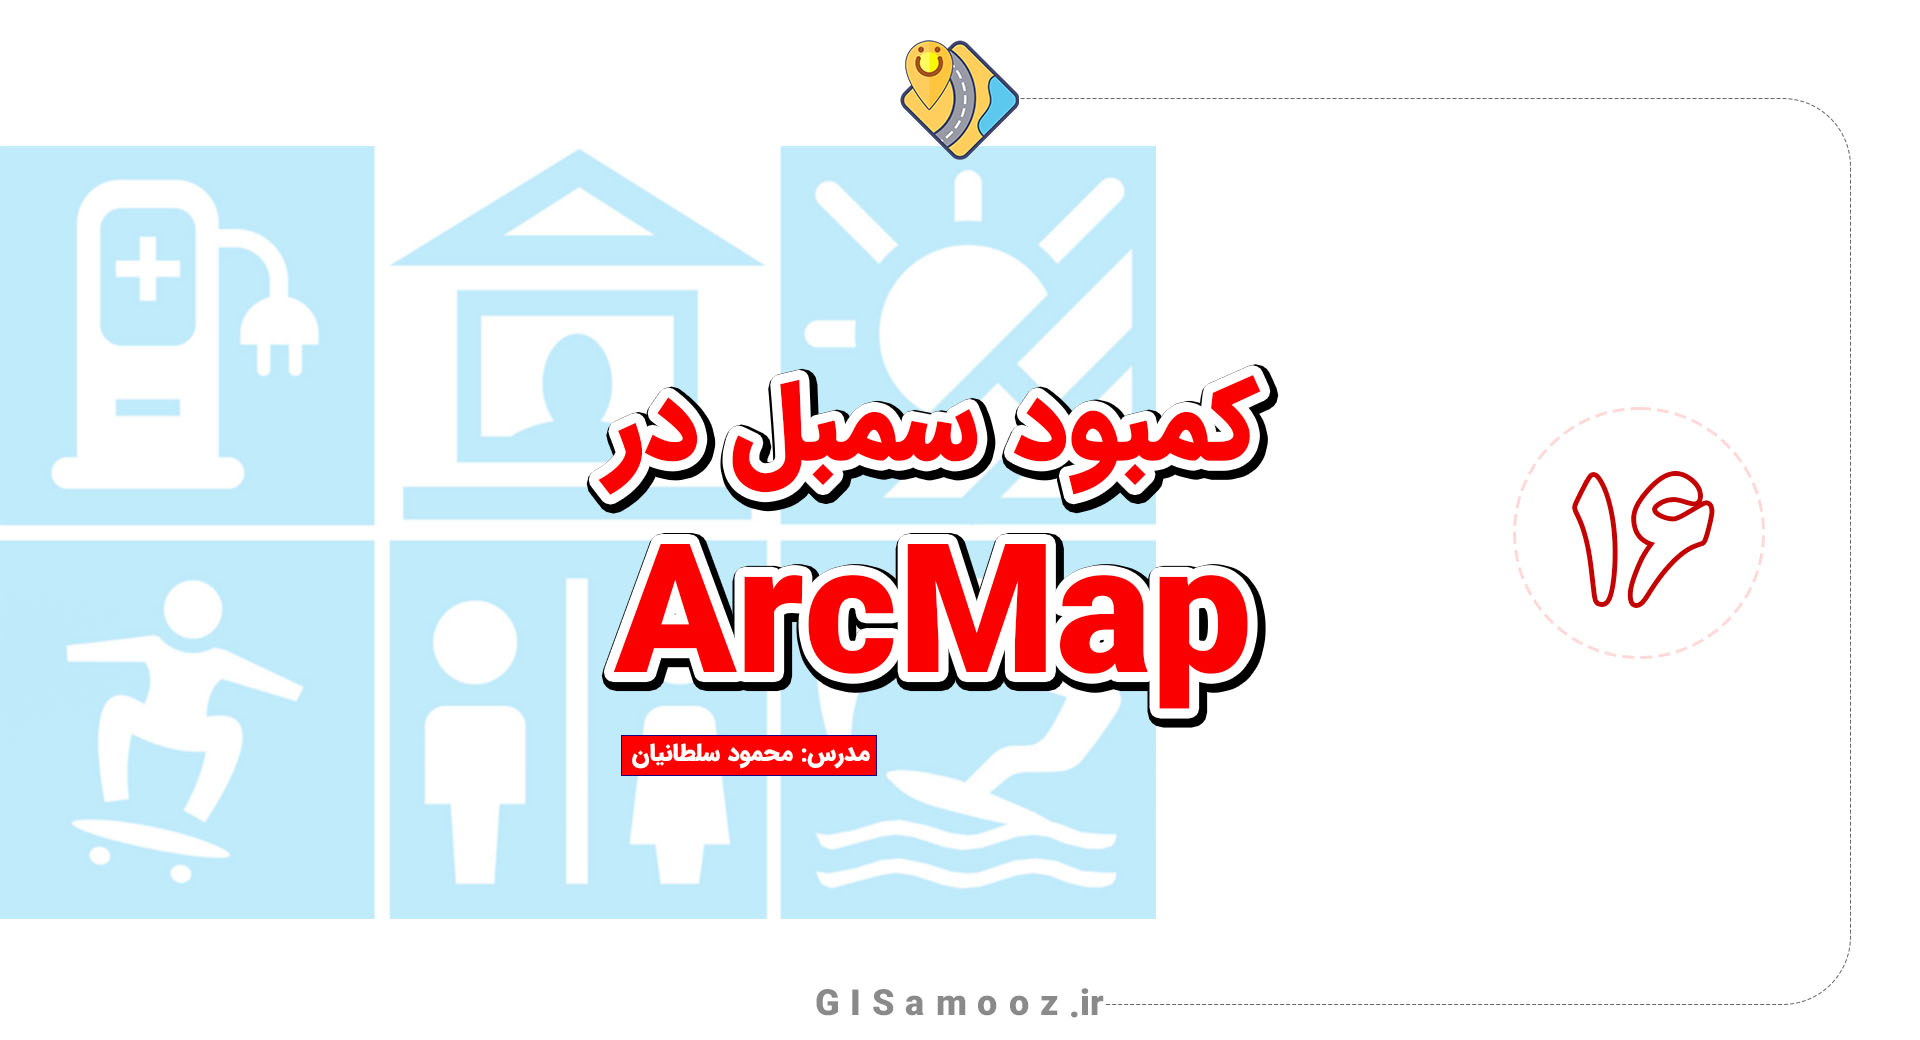 حل مشکل سمبل در ArcMap